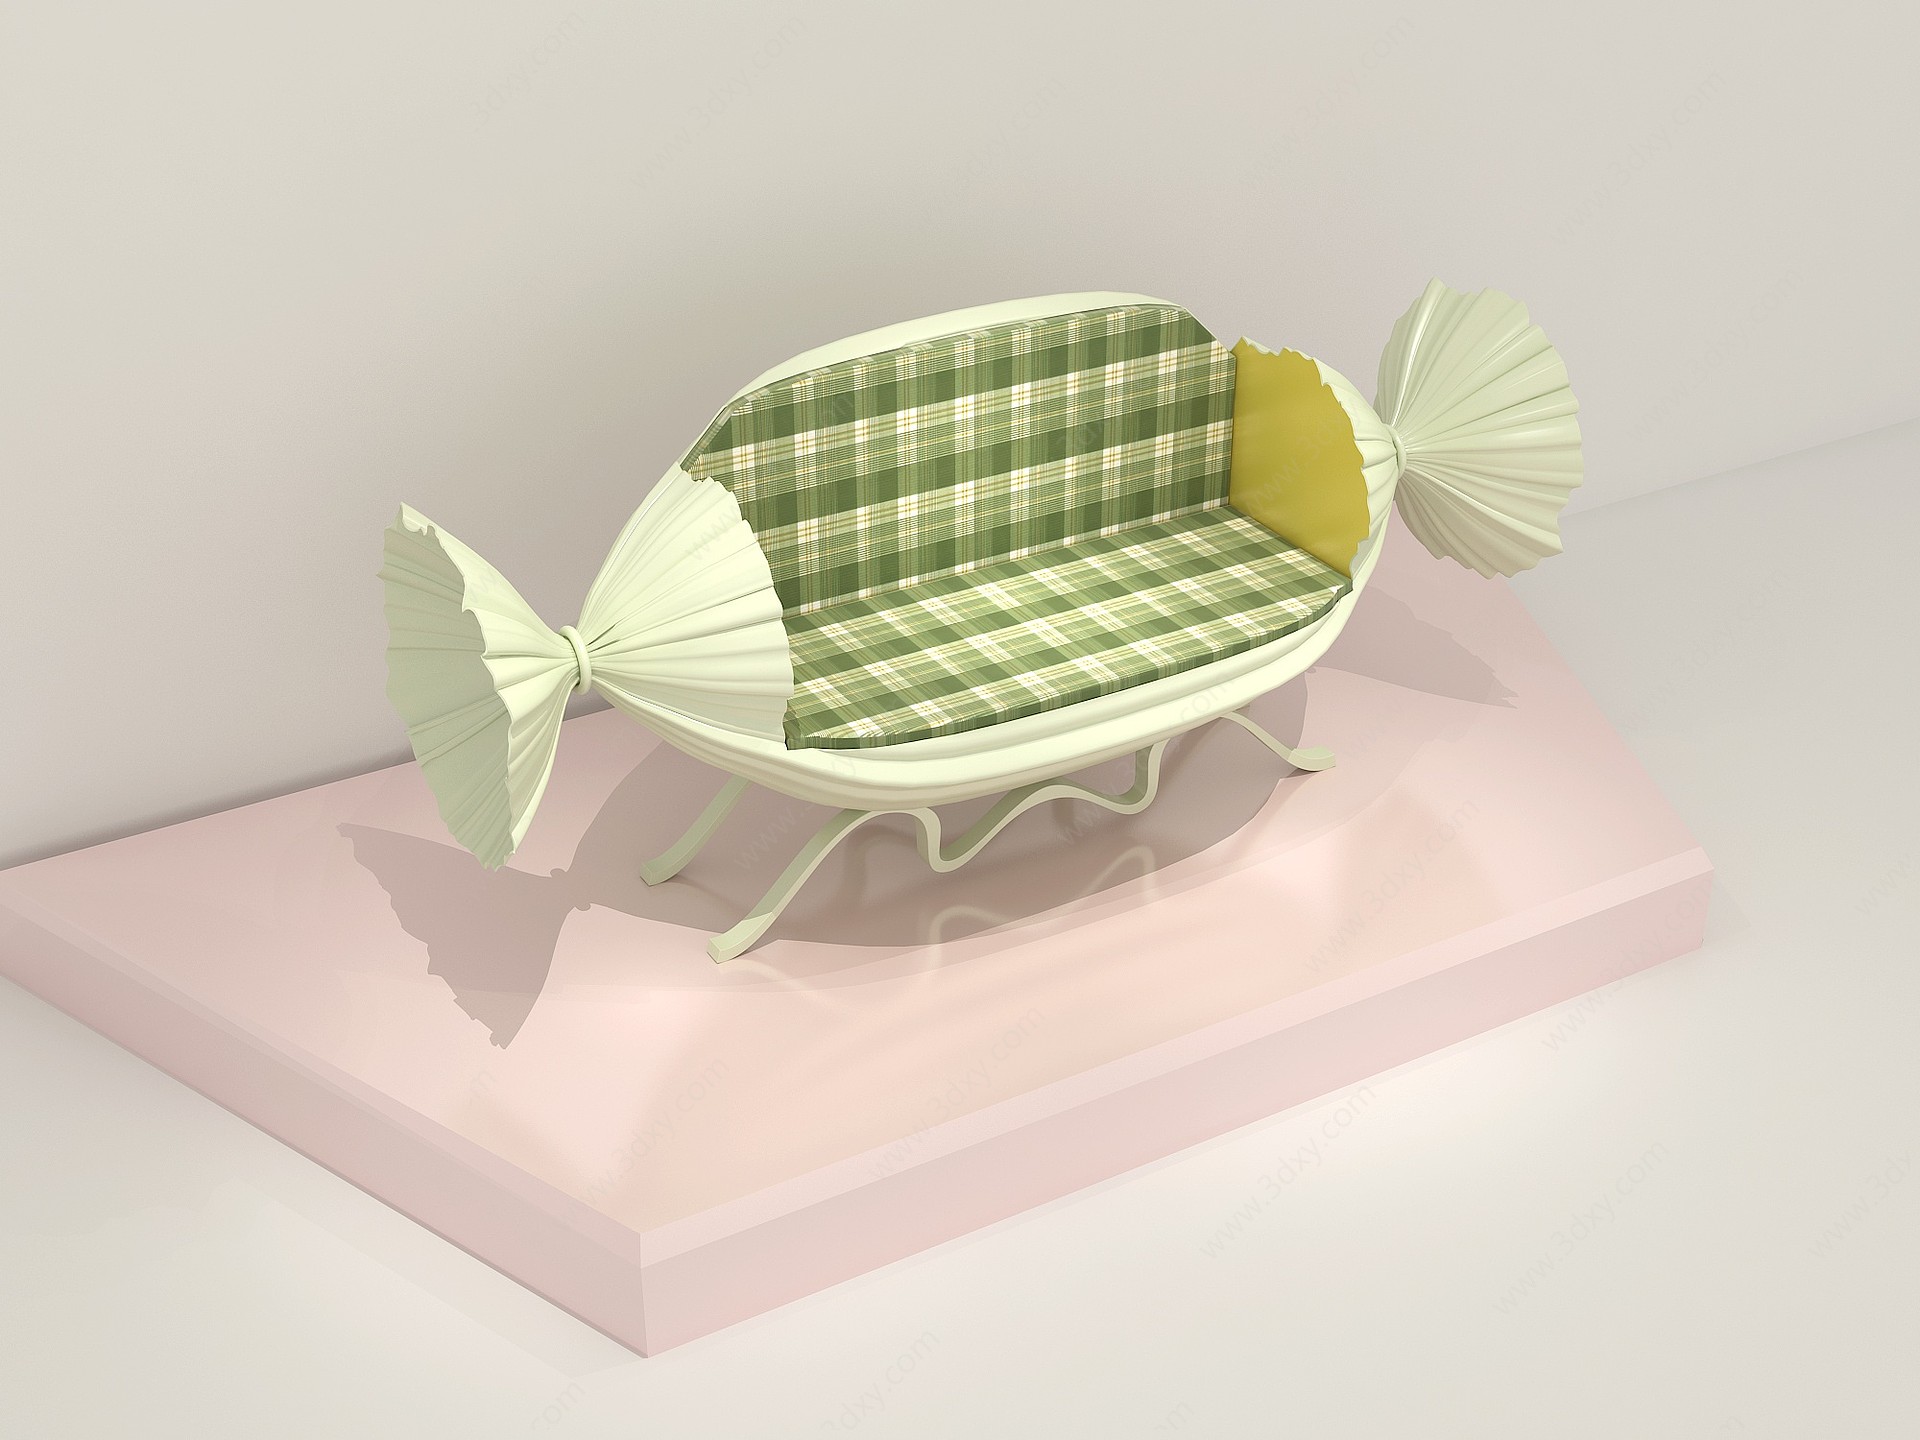 现代户外椅3D模型